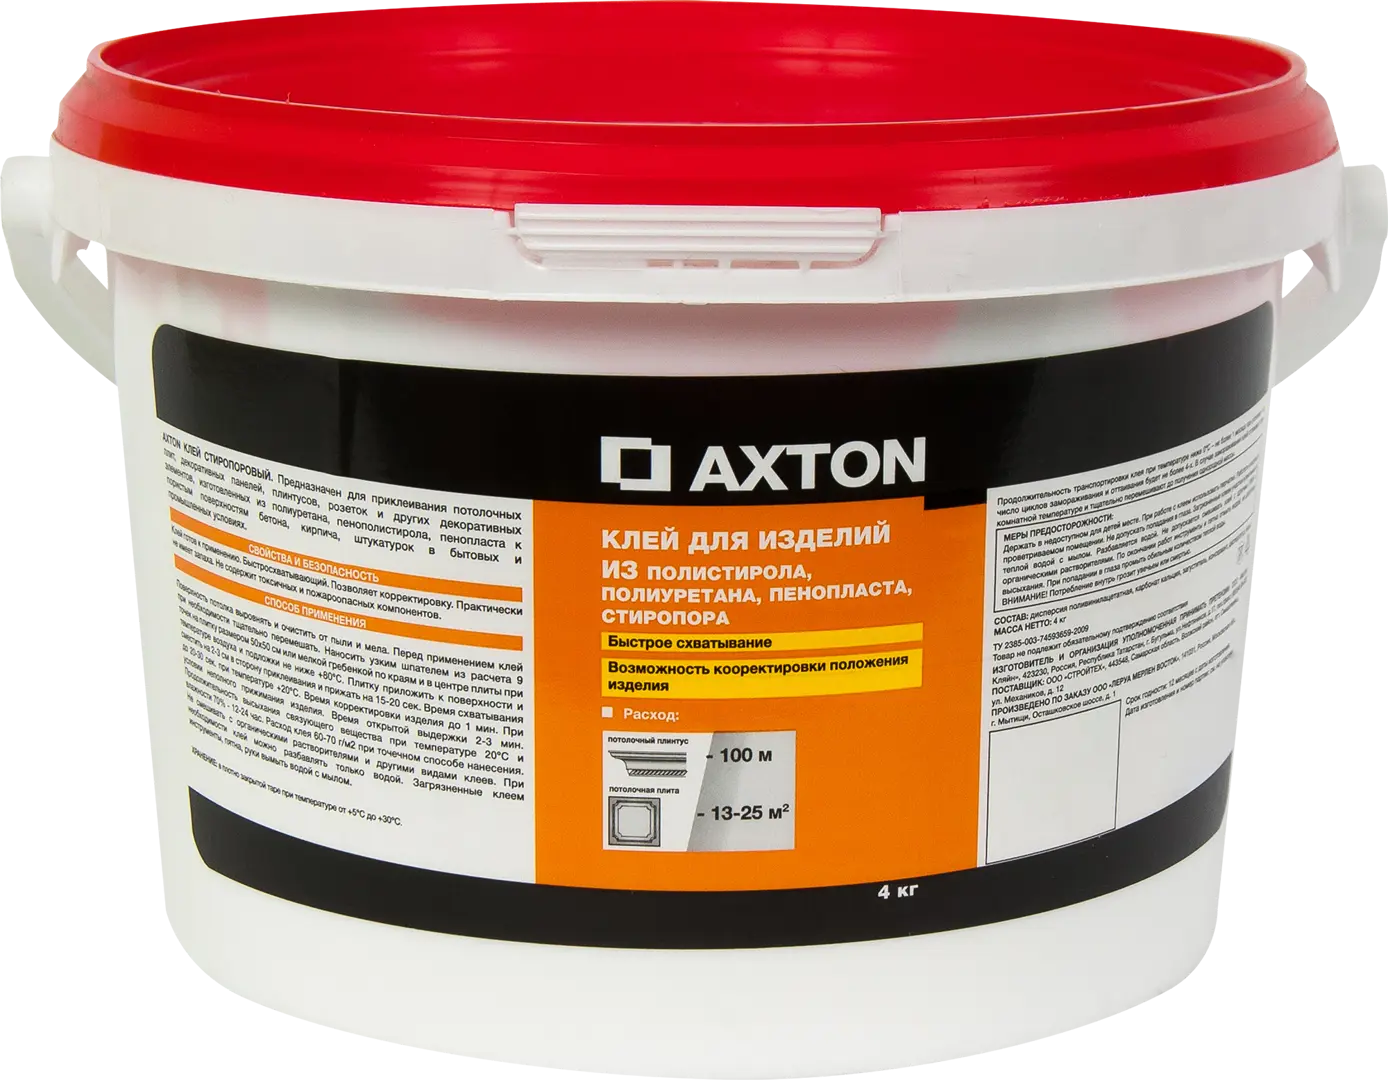 Клей Axton для потолочных изделий стиропоровый 4 кг клей для потолочных плит новбытхим